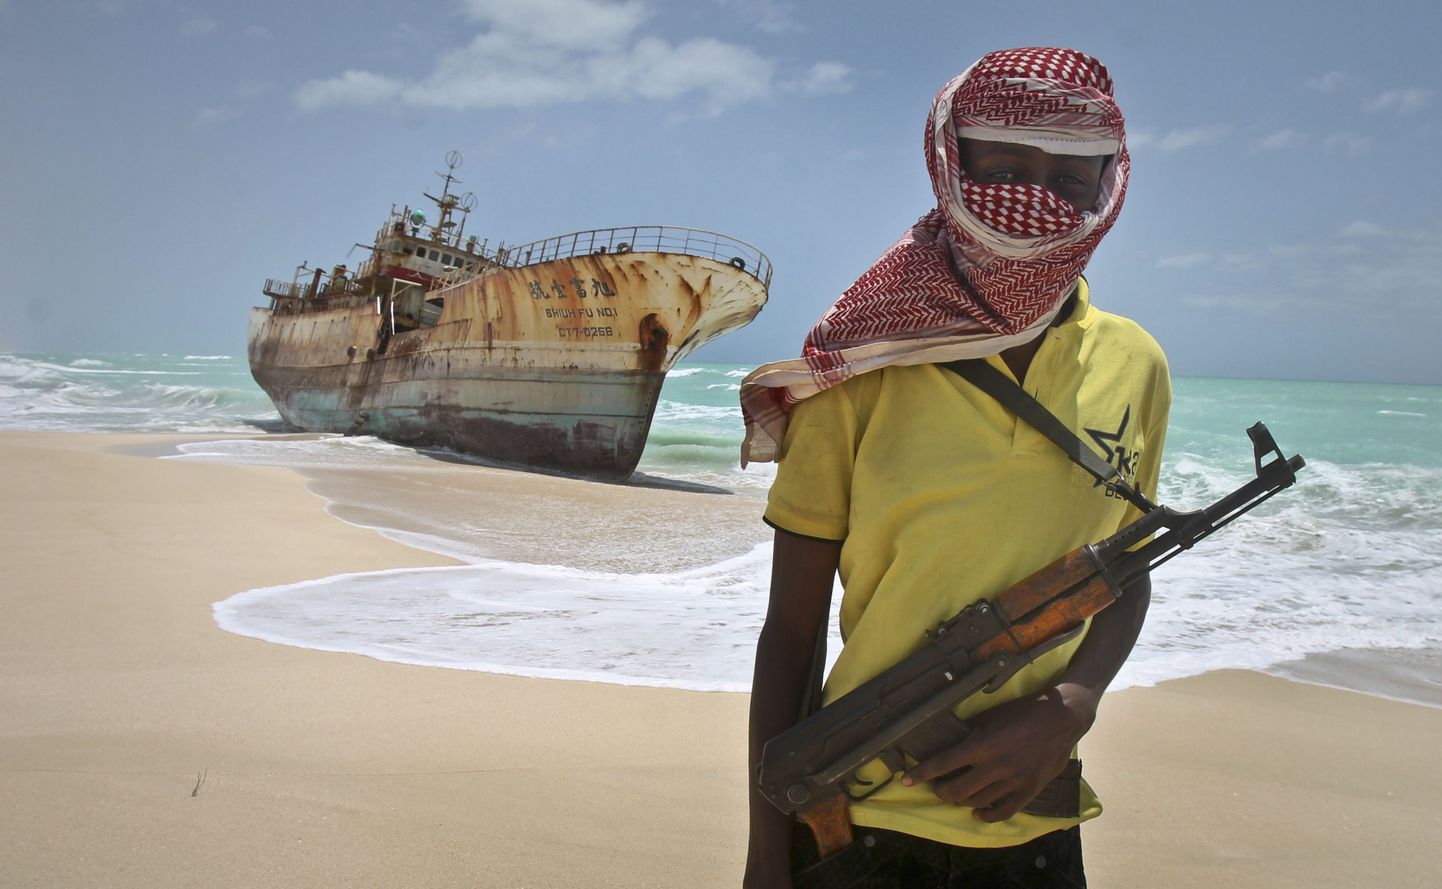 Somaalia piraat Hassan poseerib Taiwani kalalaeva kõrval, mille meeskonna vabaks laskmise eest maksti kurjategijatele kopsakas lunaraha.